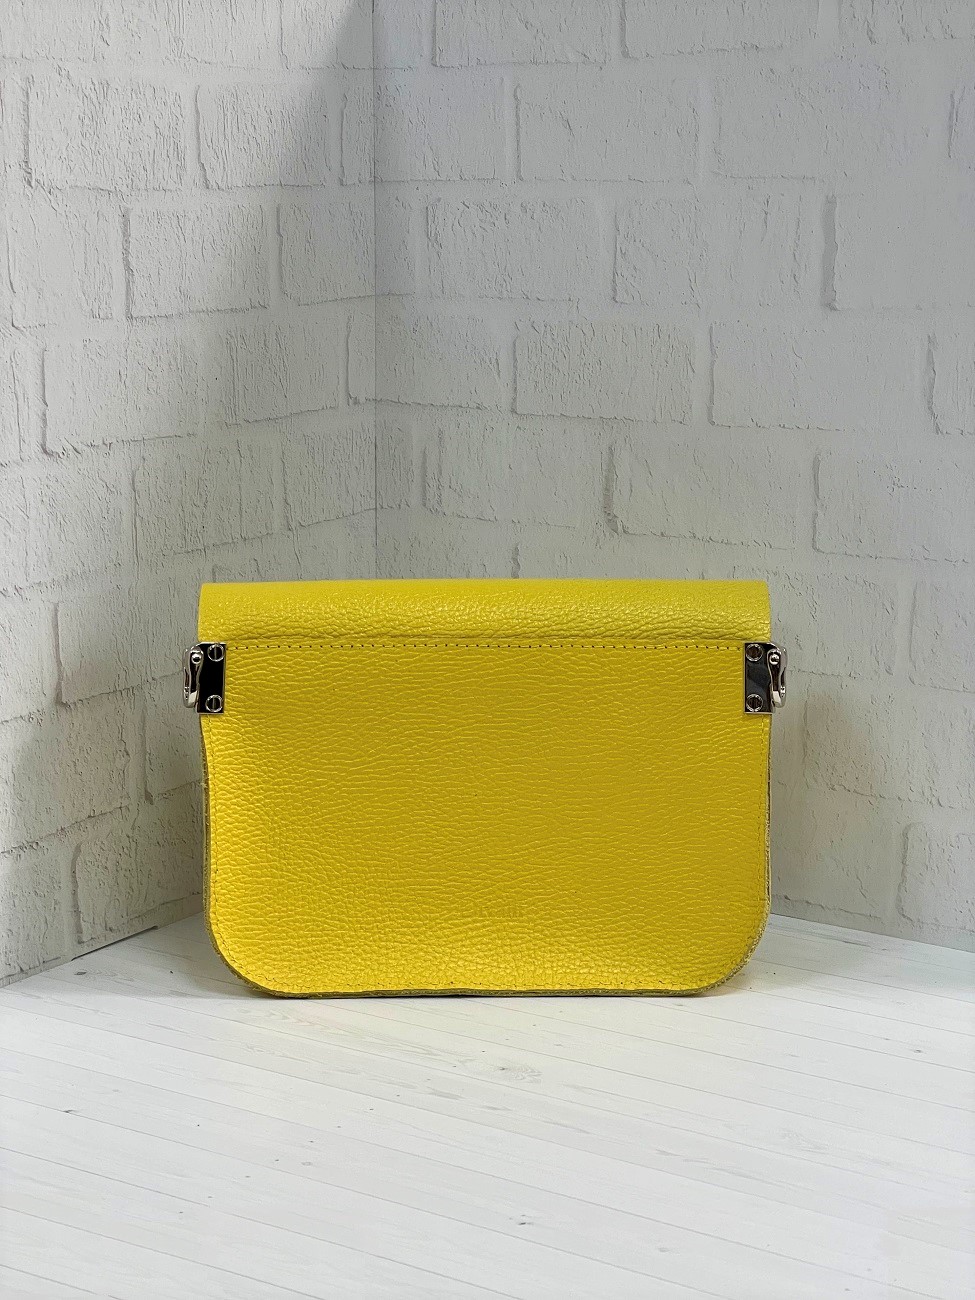 Женская кожаная сумка через плечо лимонно-желтая A001 lemon grain